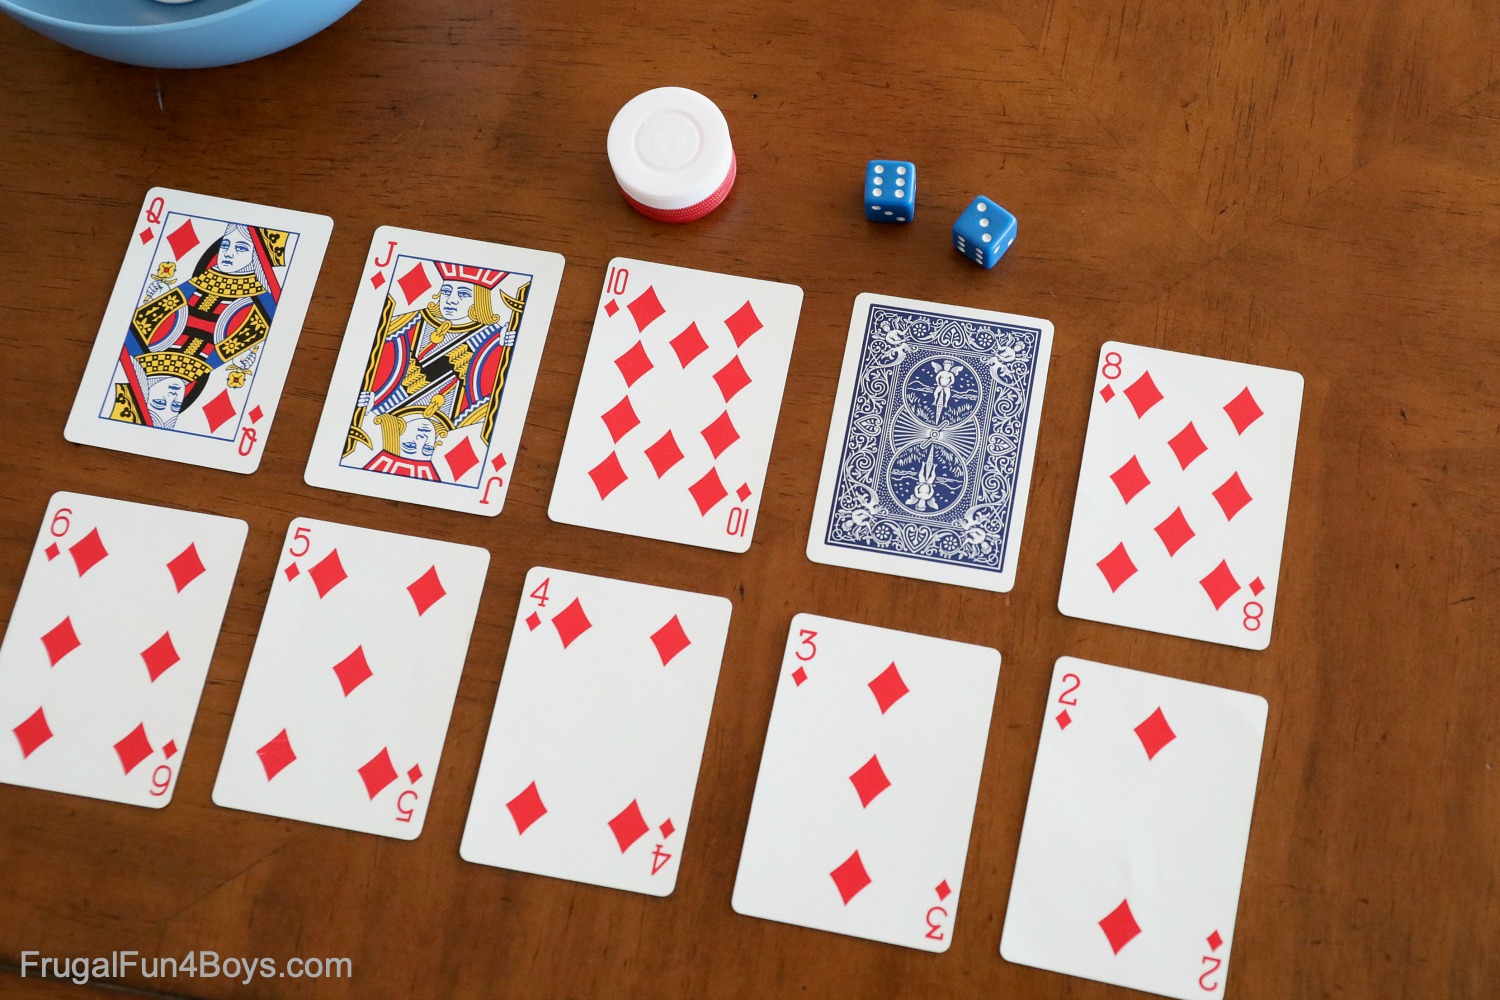 Aturan dasar permainan kartu poker